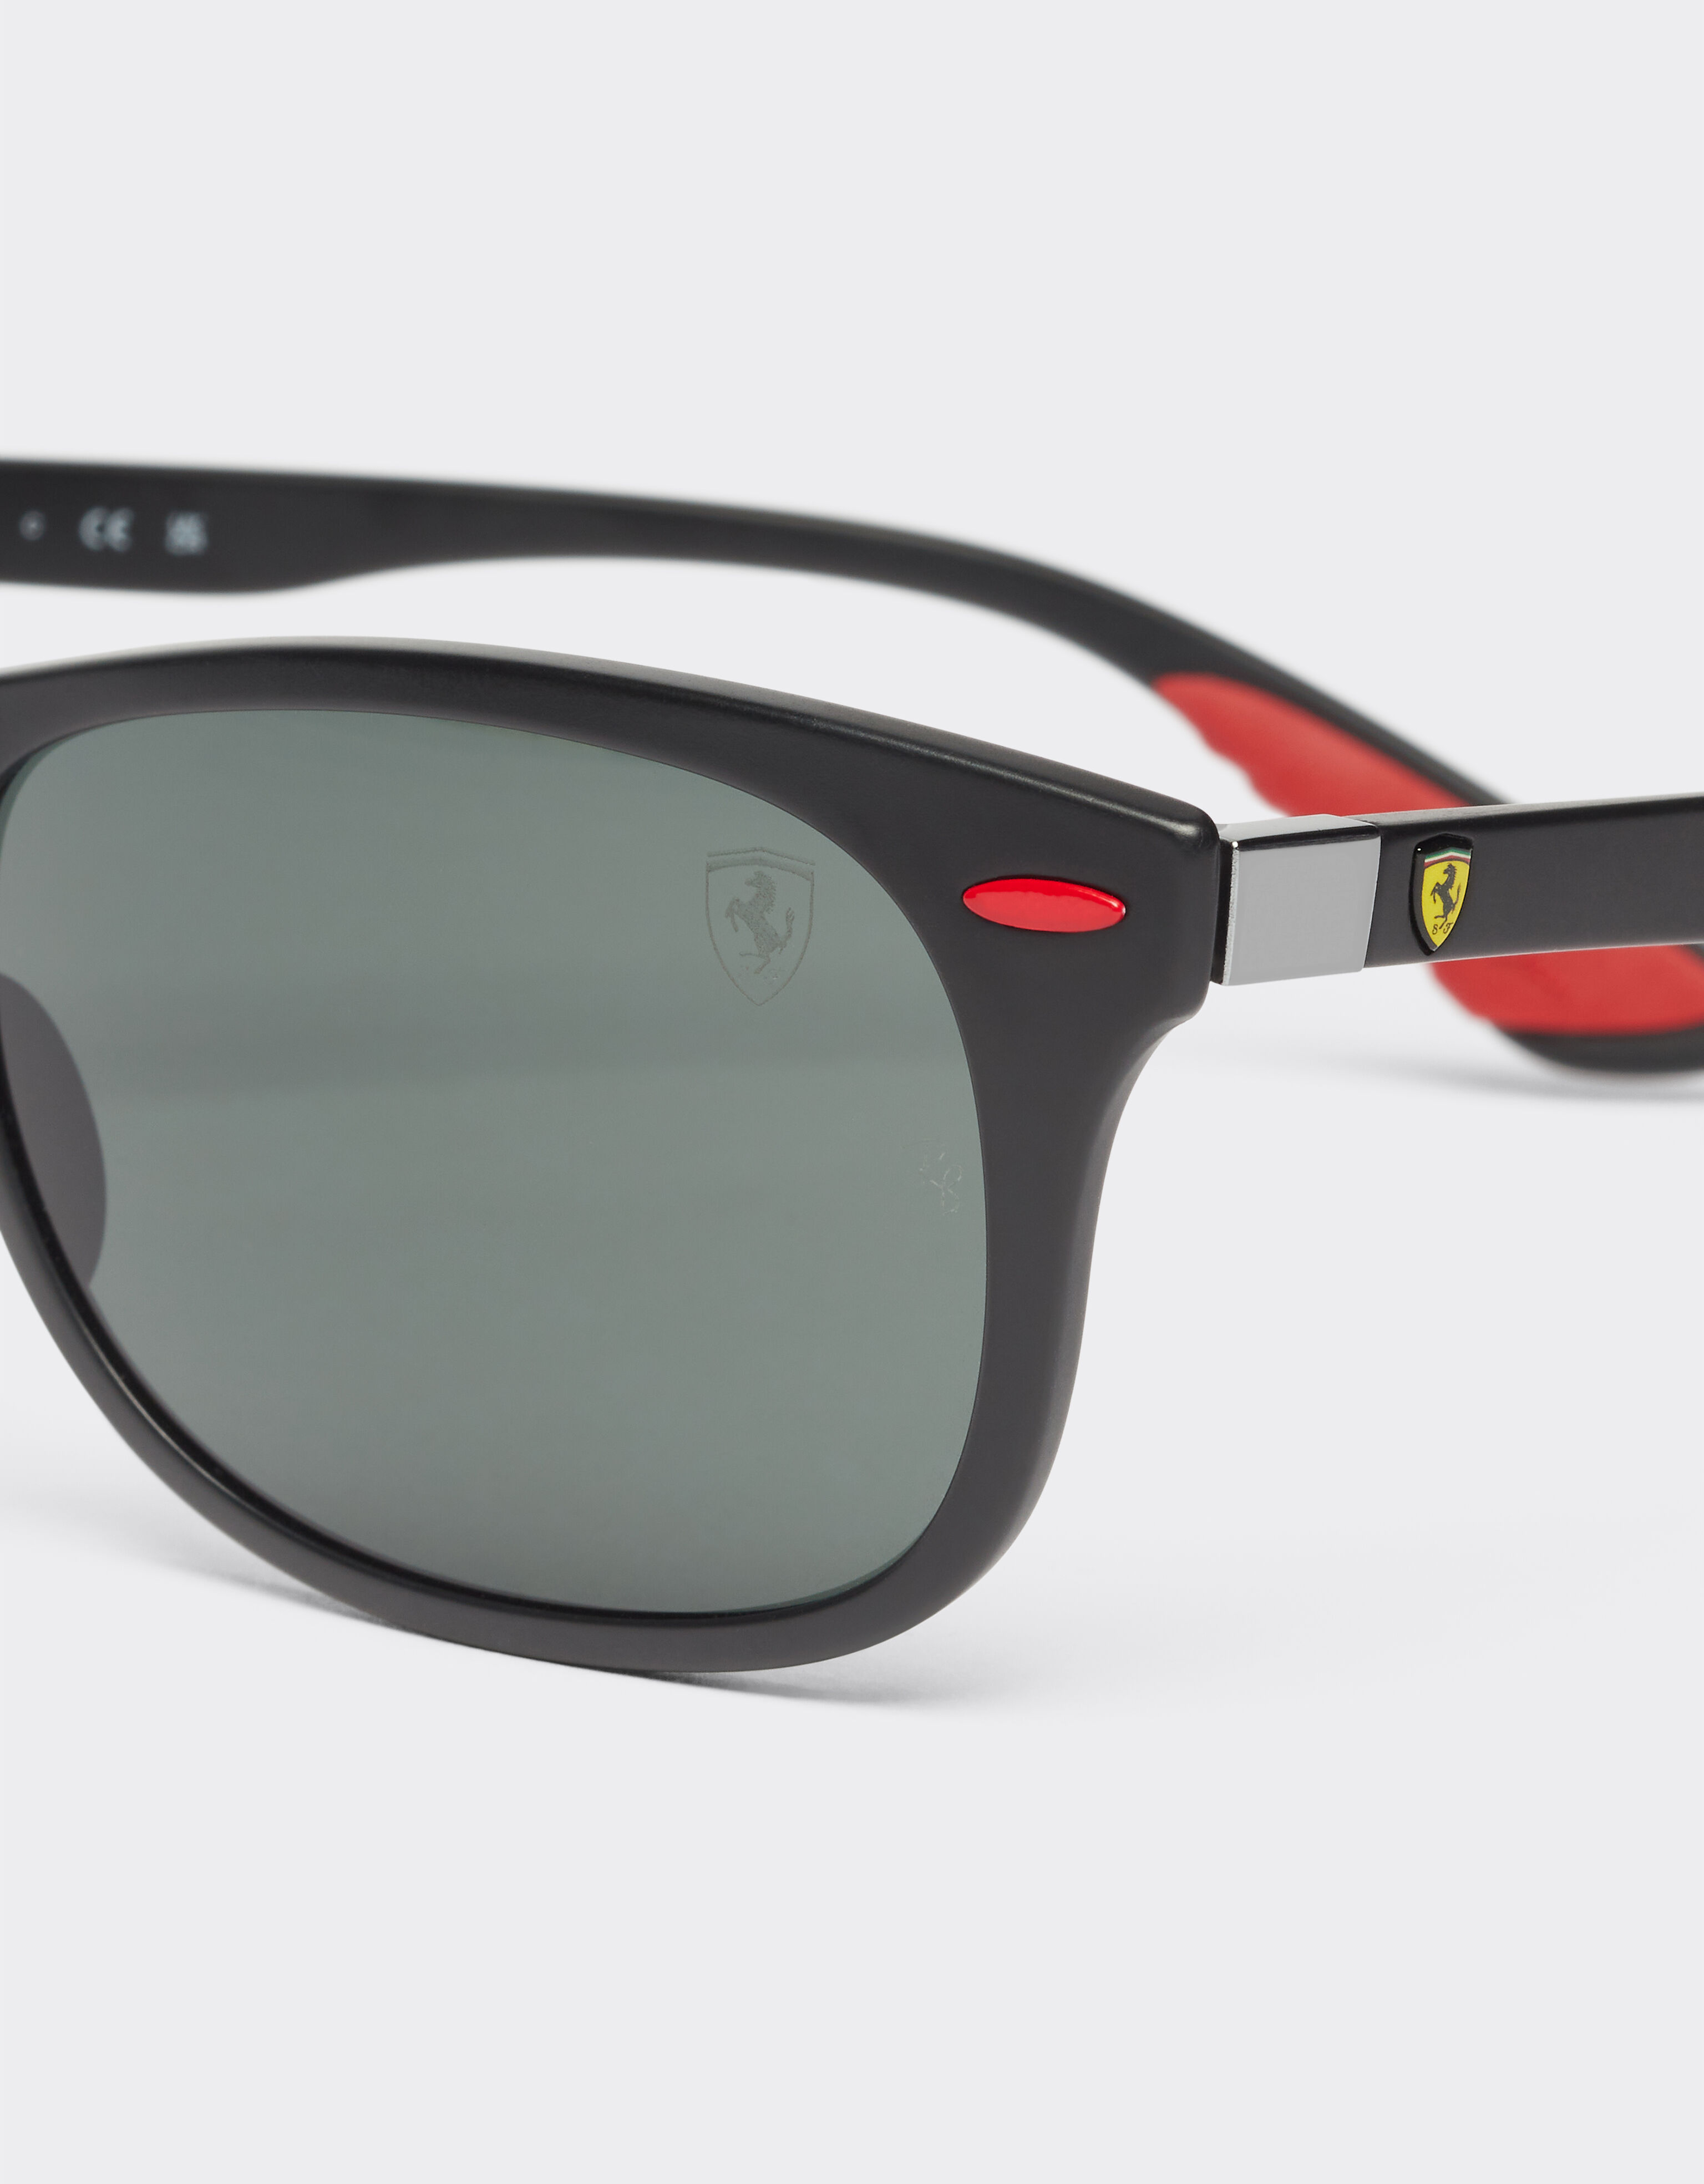 Ferrari Ray-Ban für Scuderia Ferrari Sonnenbrille 0RB4607M in Schwarz mit dunkelgrünen Gläsern Mattschwarz F1296f